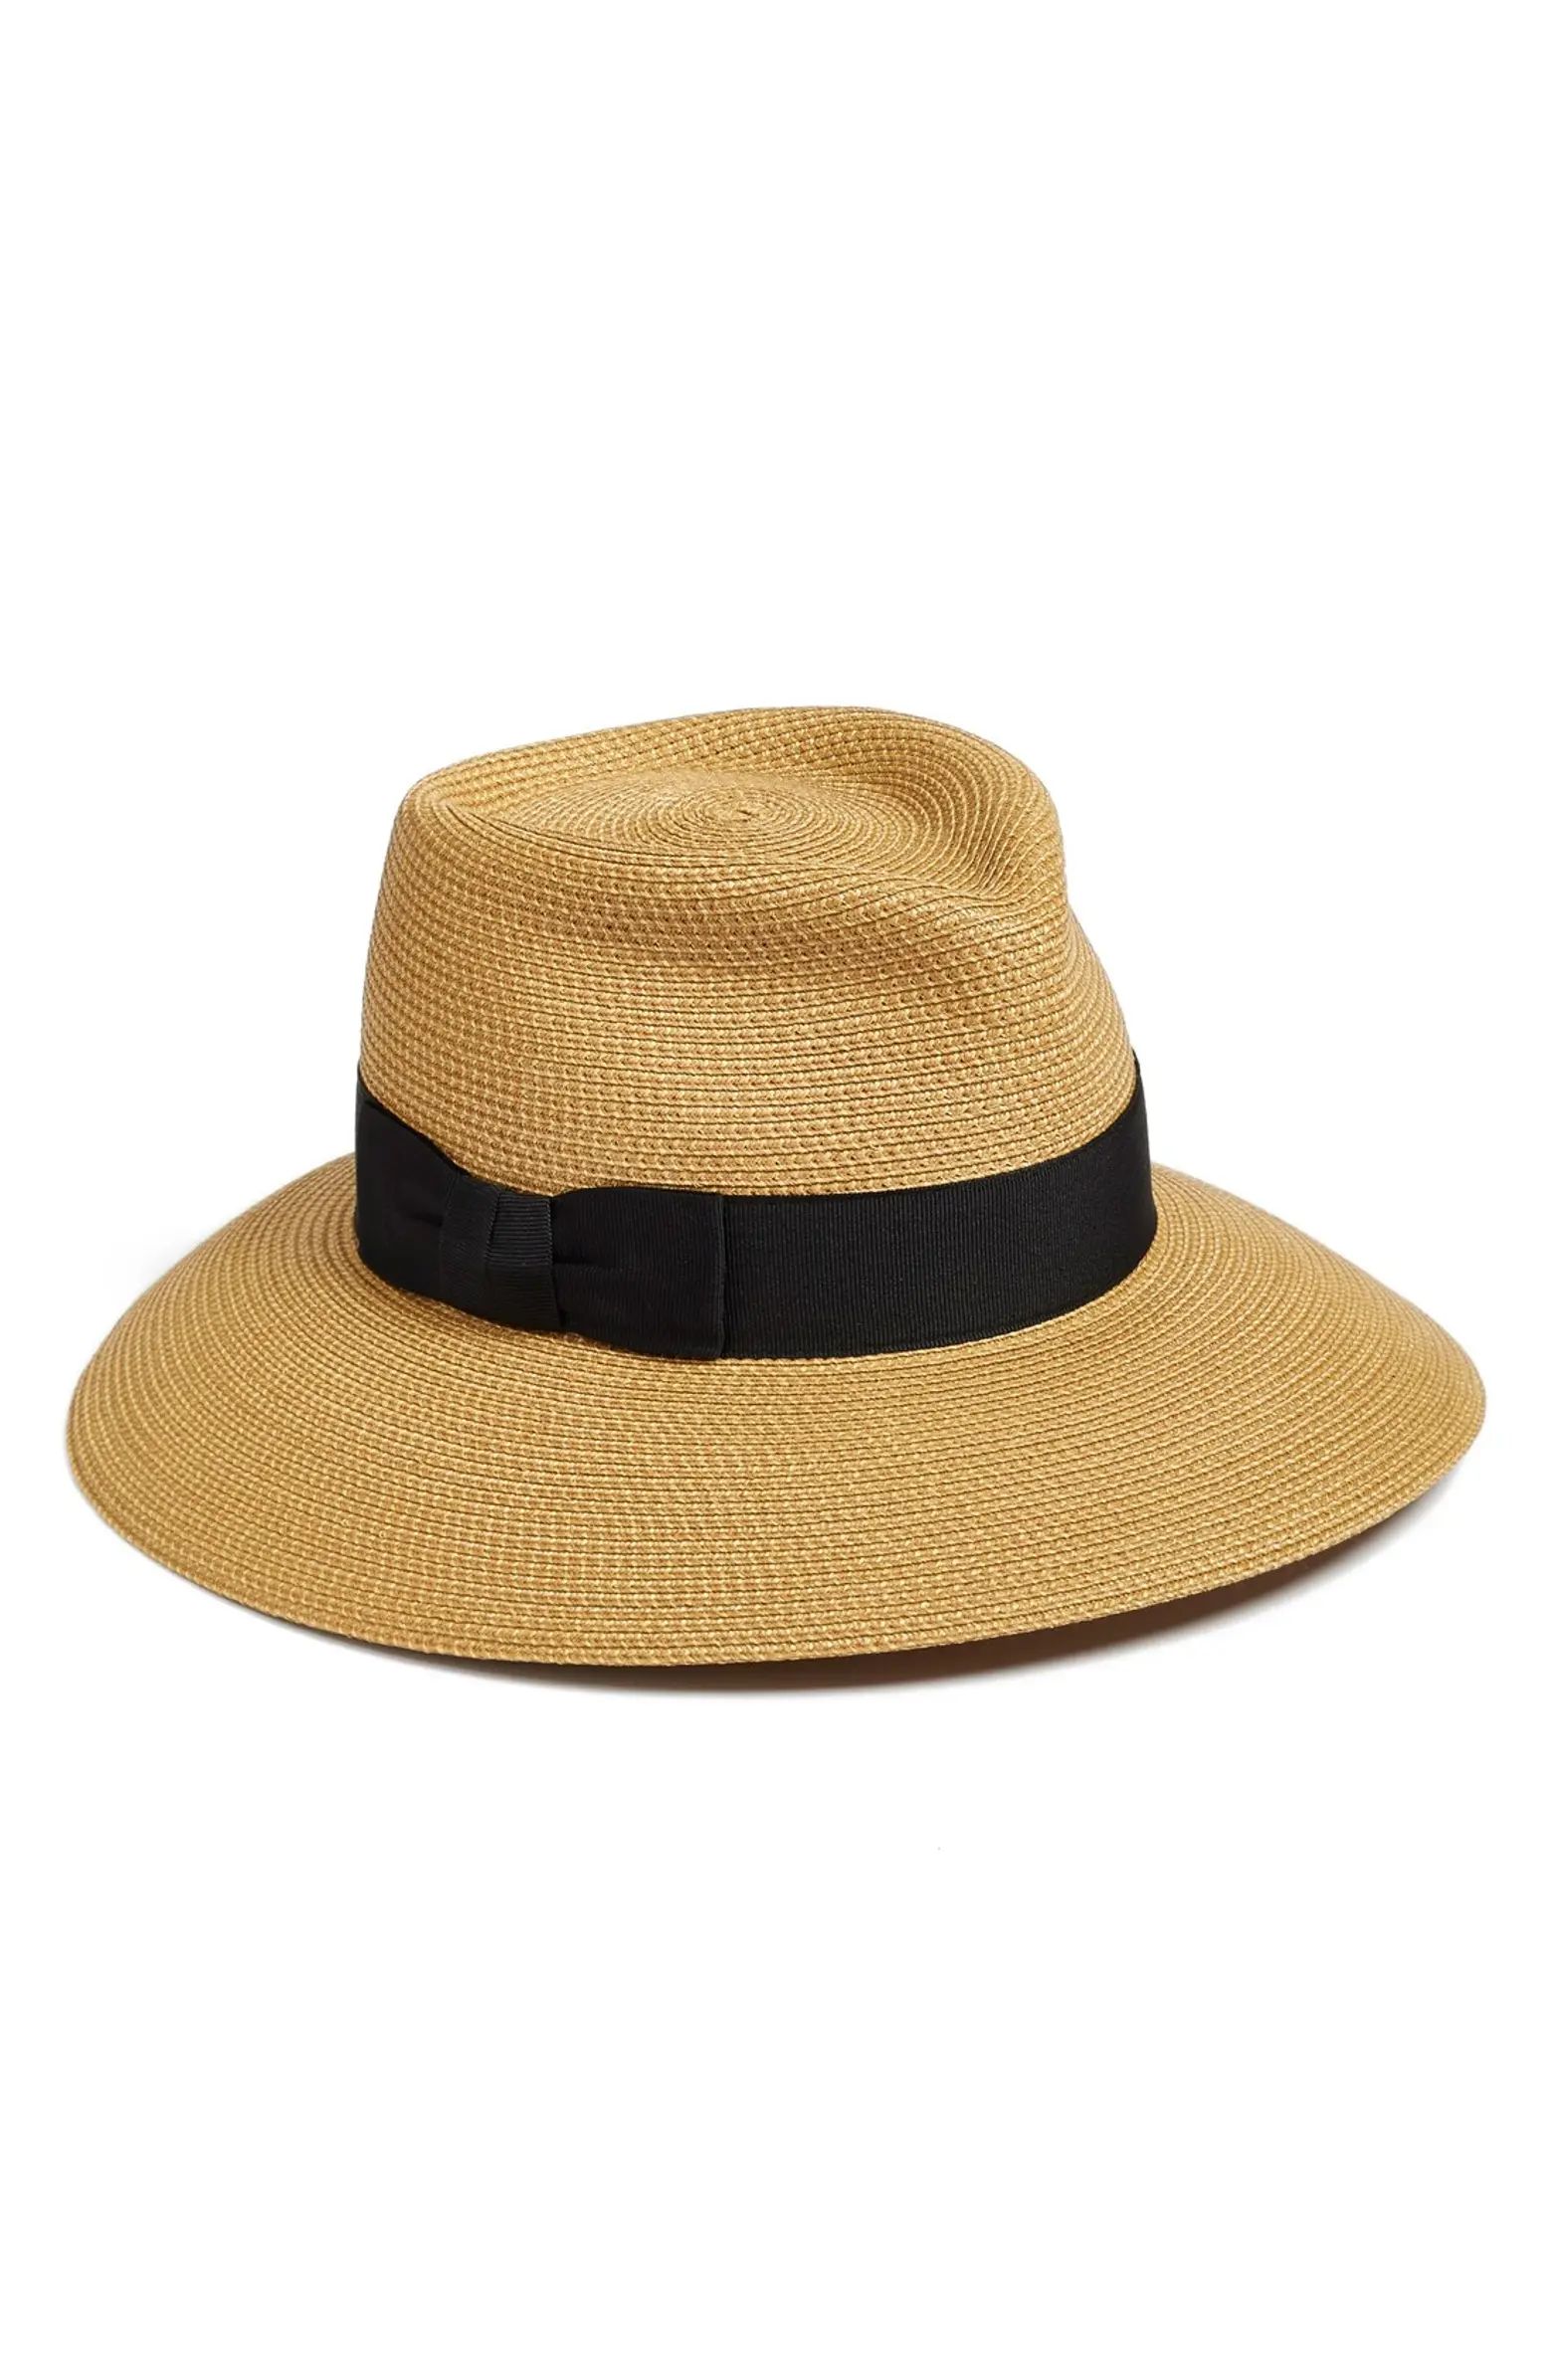 Phoenix Packable Straw Fedora Sun Hat | Nordstrom